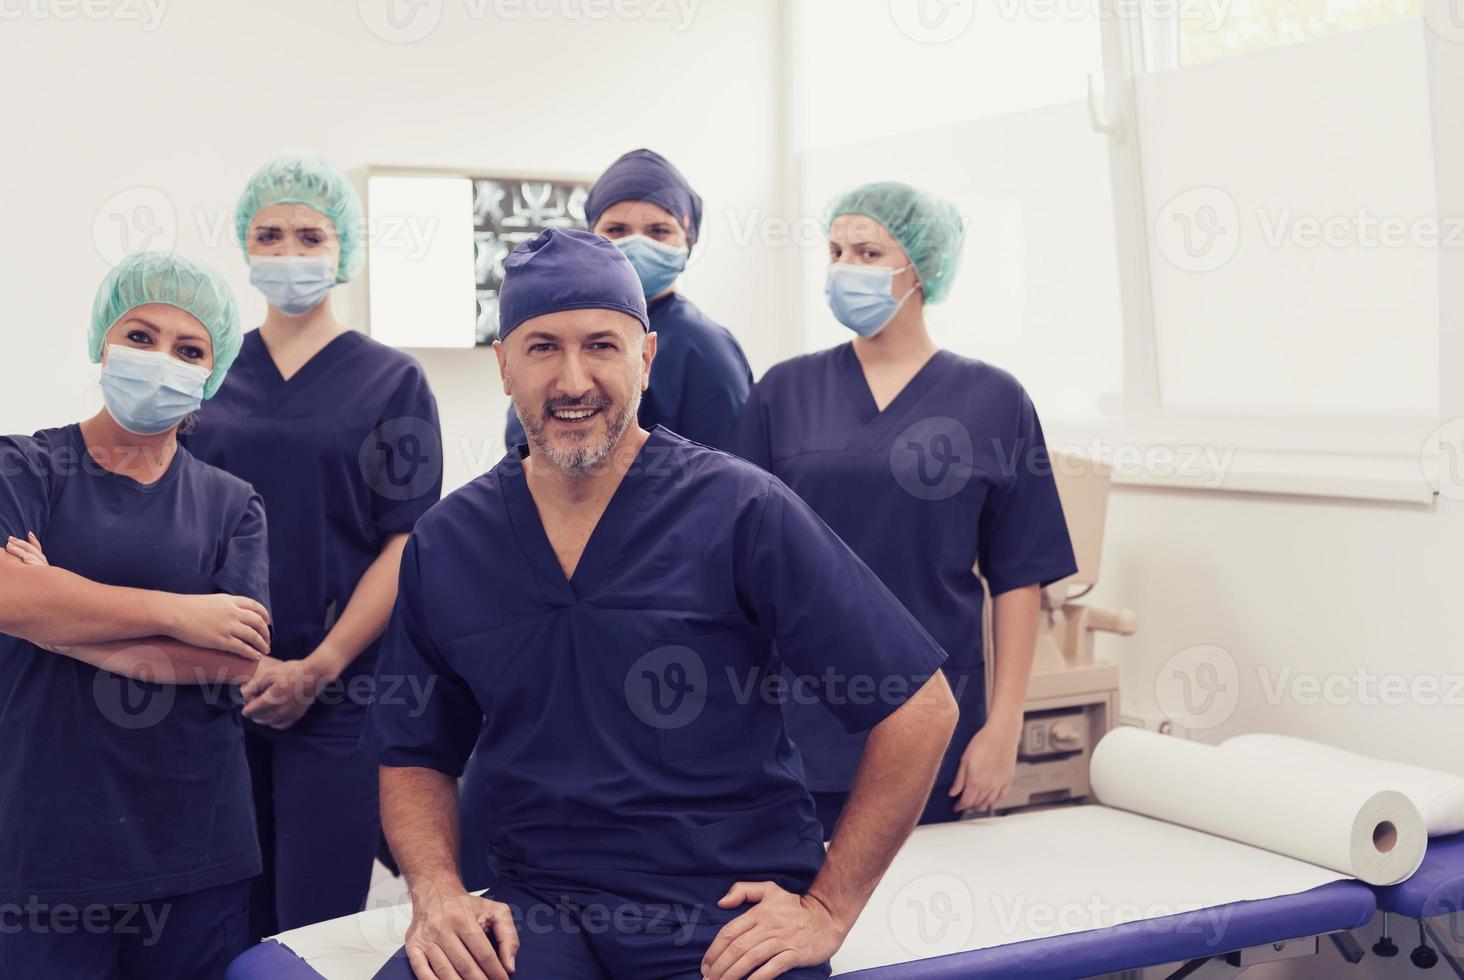 médecin orthopédiste travaillant avec son équipe multiethnique photo